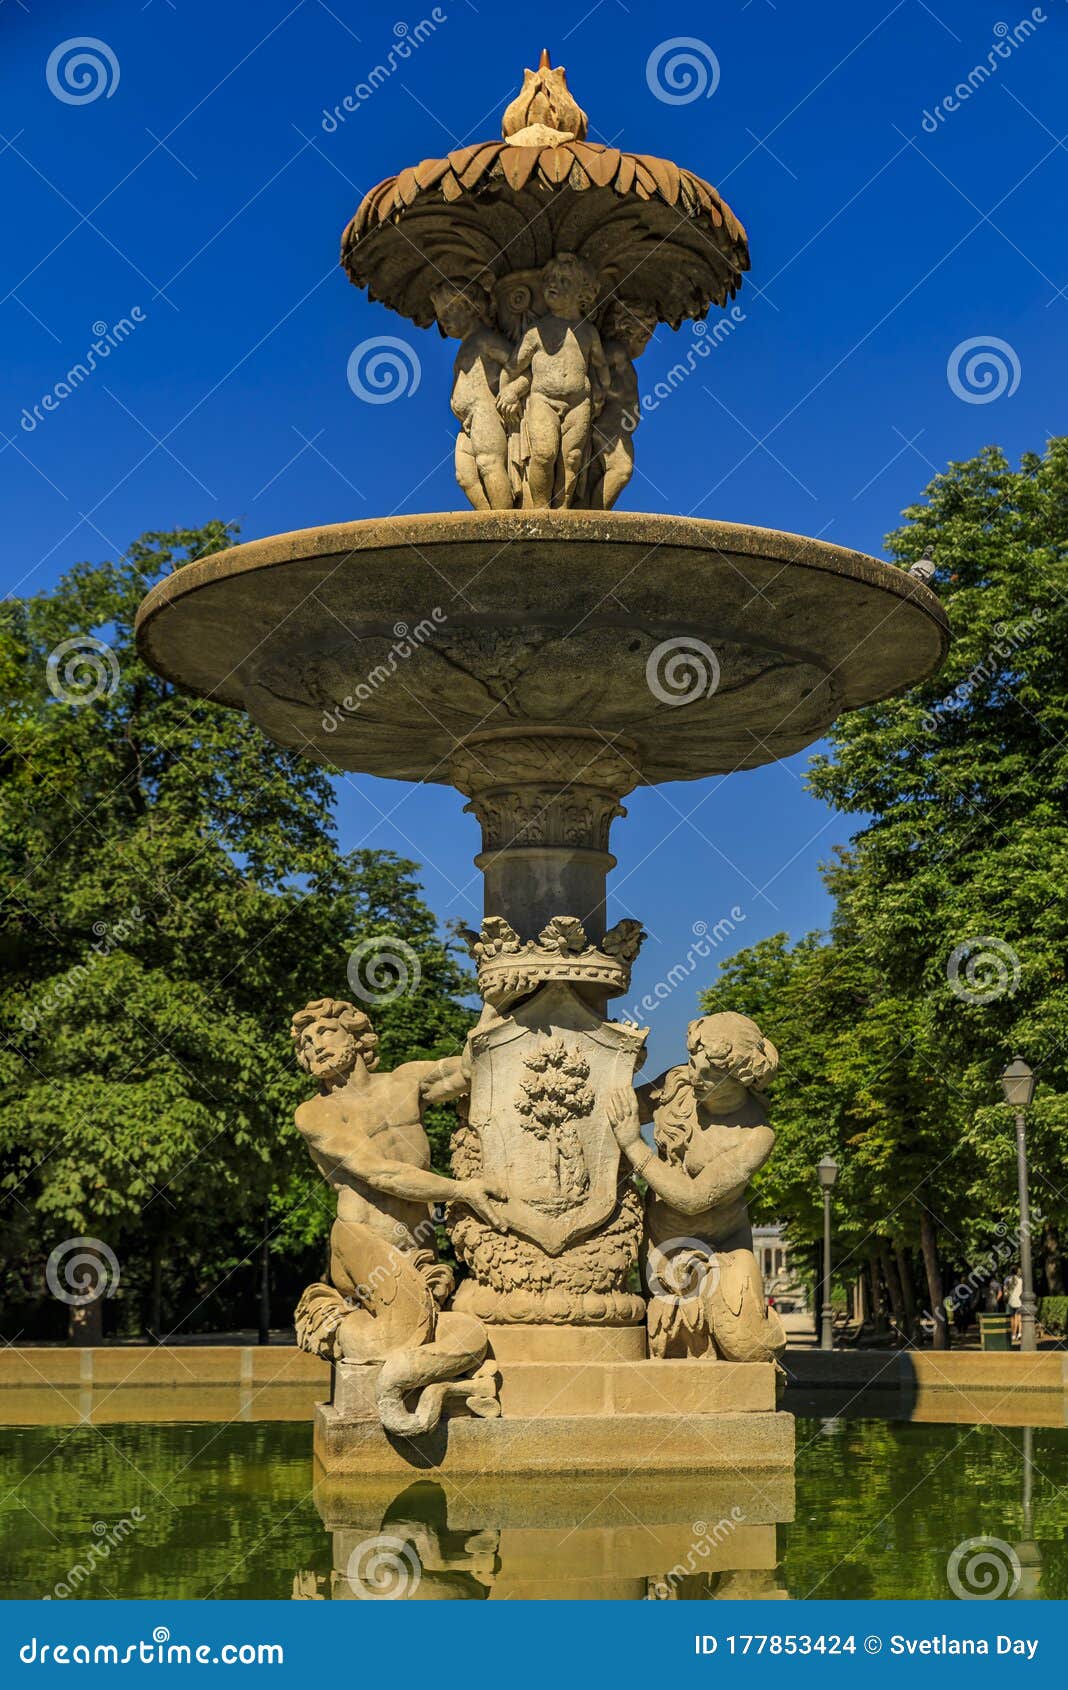 details of the artichoke fountain or fuente de la alcachofa with triton and nereida in buen retiro park, madrid, spain